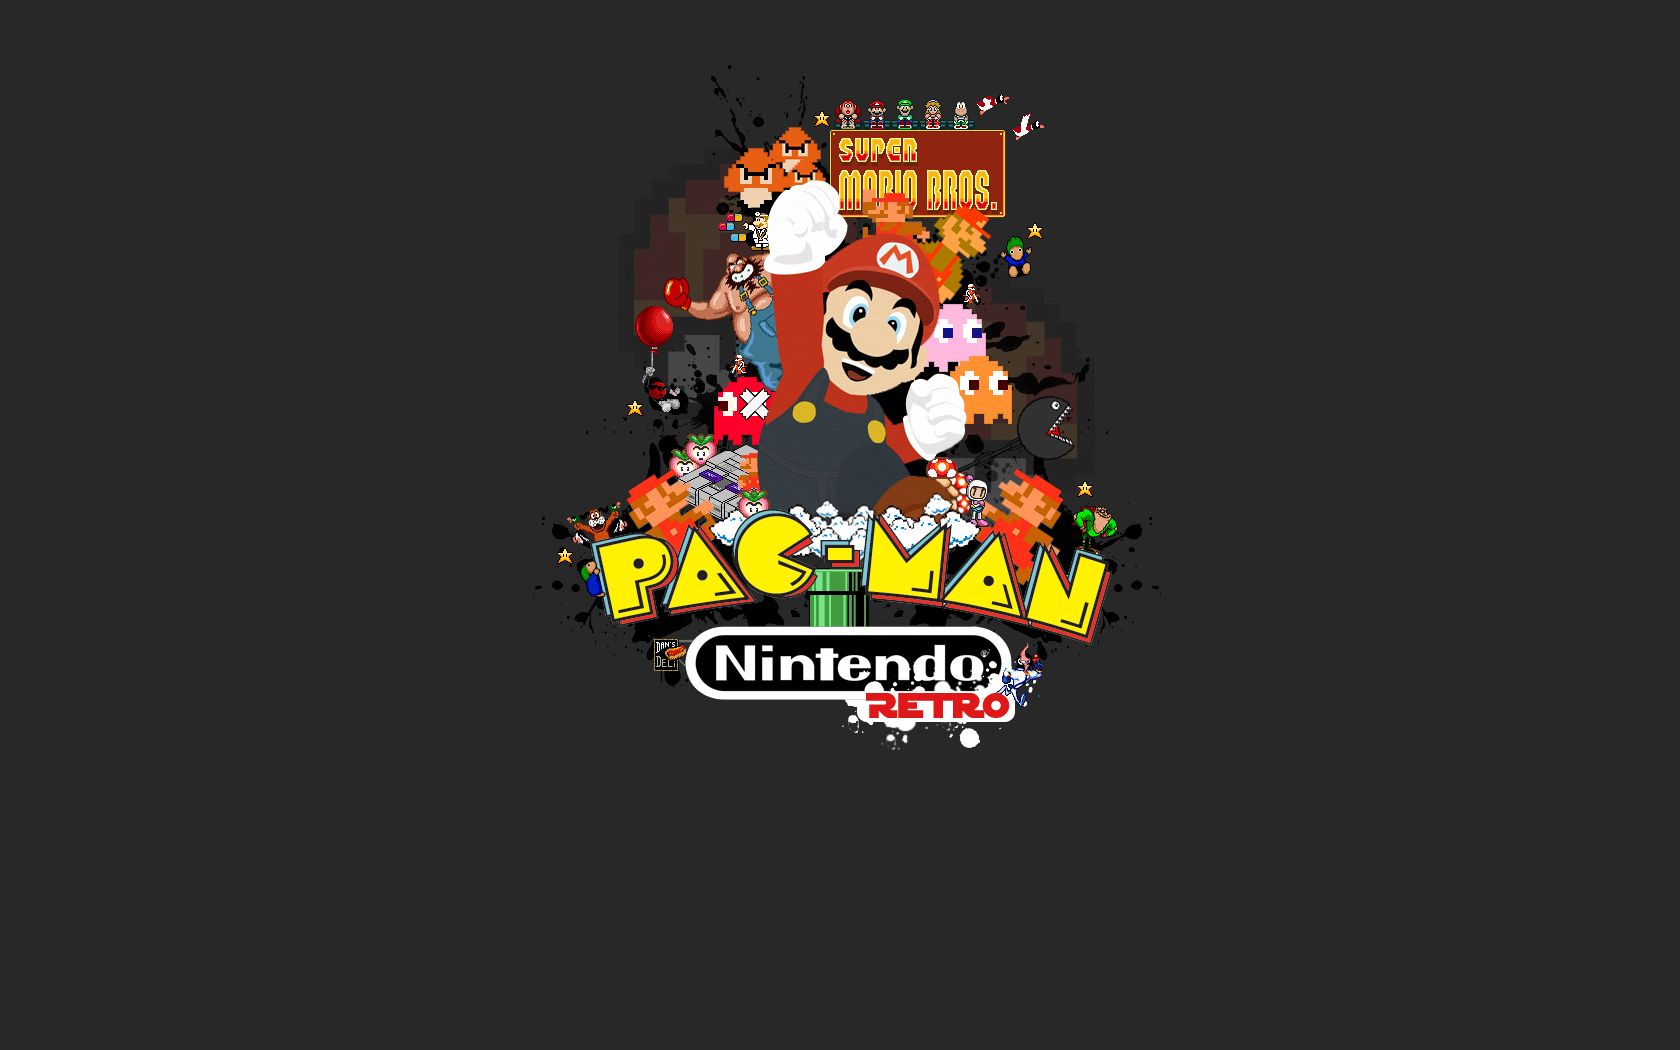 Dr. Mario Wallpaper. Mario Wallpaper, Mario iPhone Wallpaper and Funny Mario Wallpaper